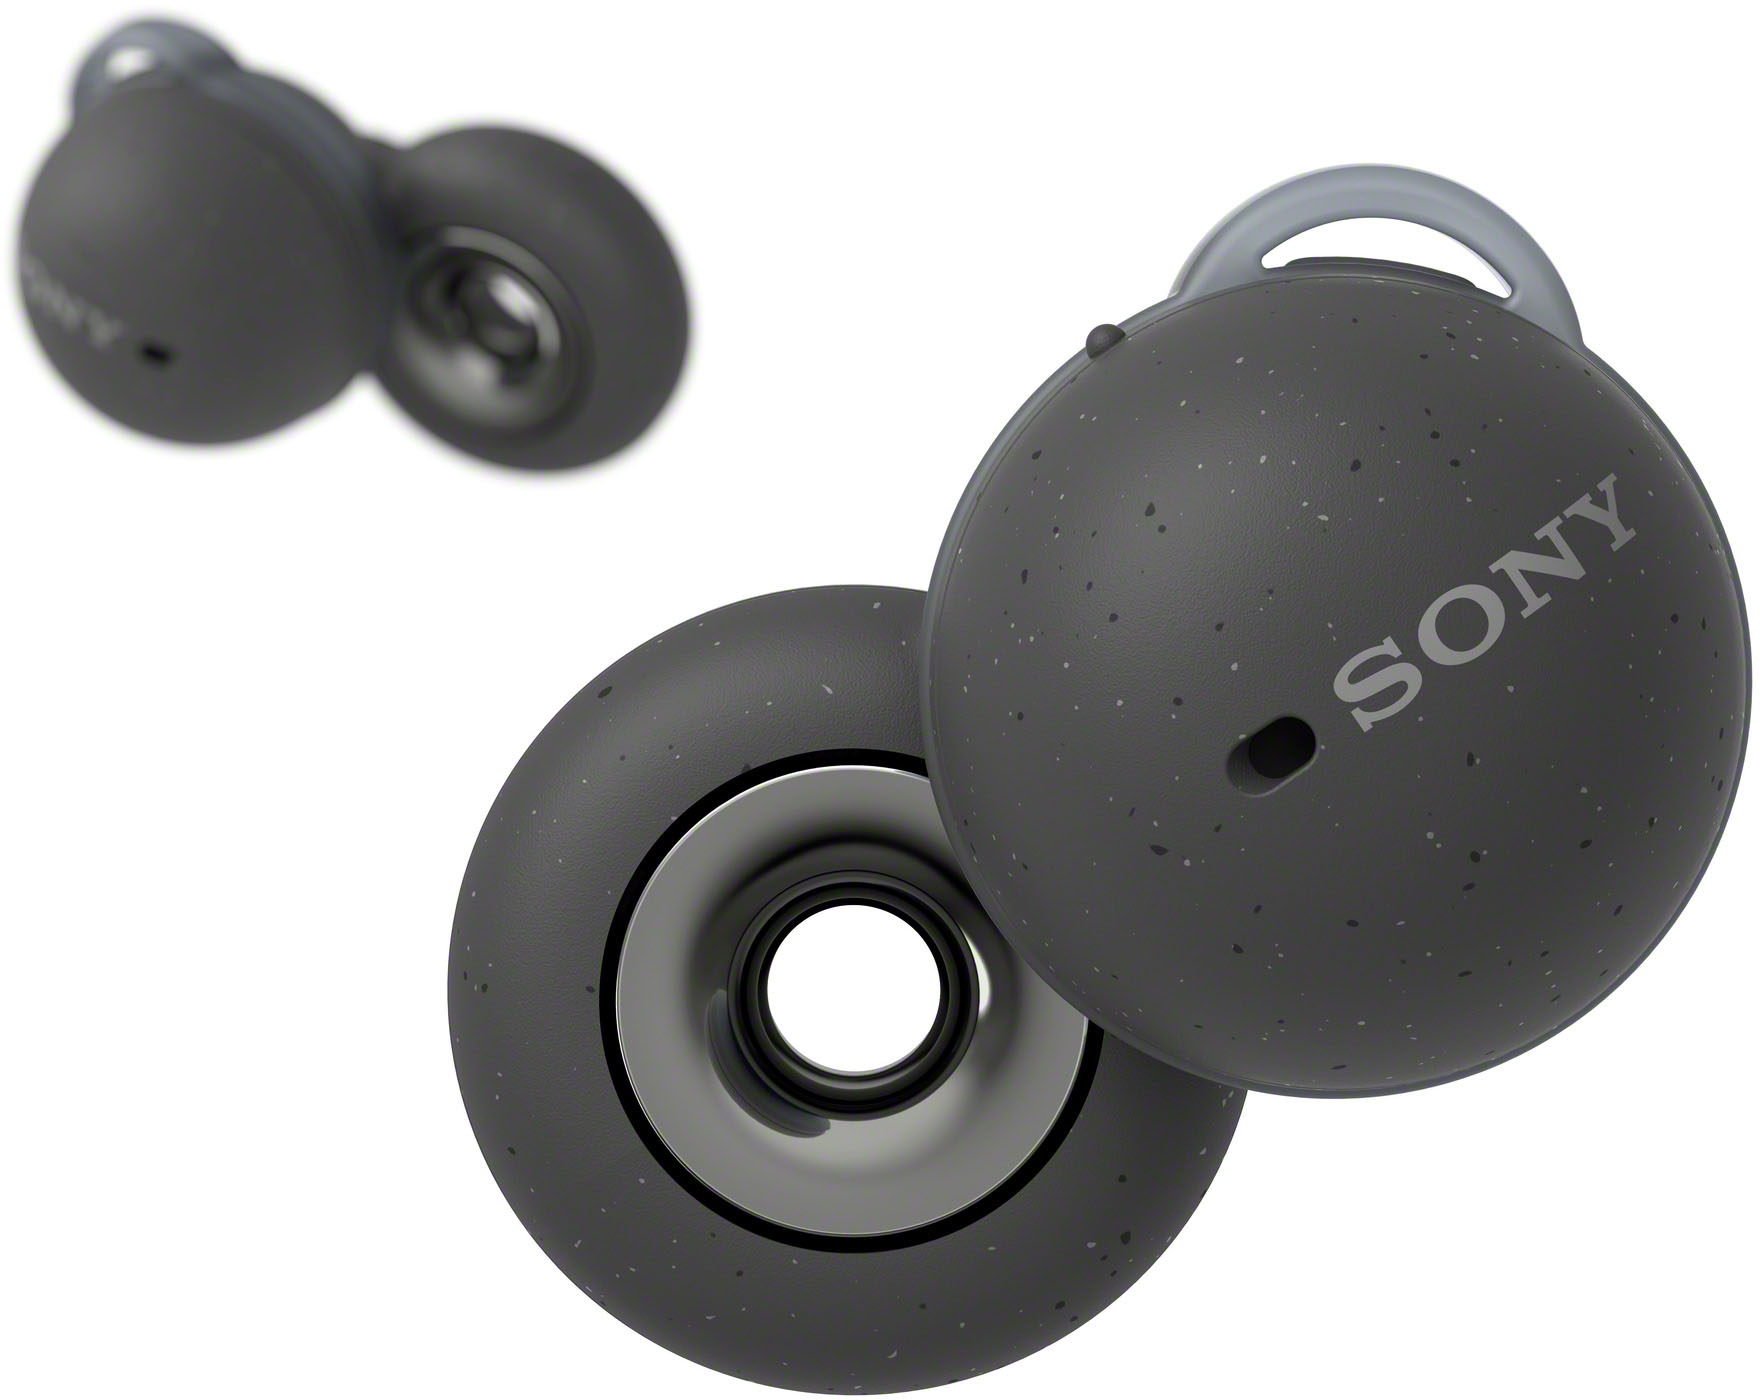 Sony LinkBuds True Wireless Open-Ear Earbuds Dark Gray WFL900/H